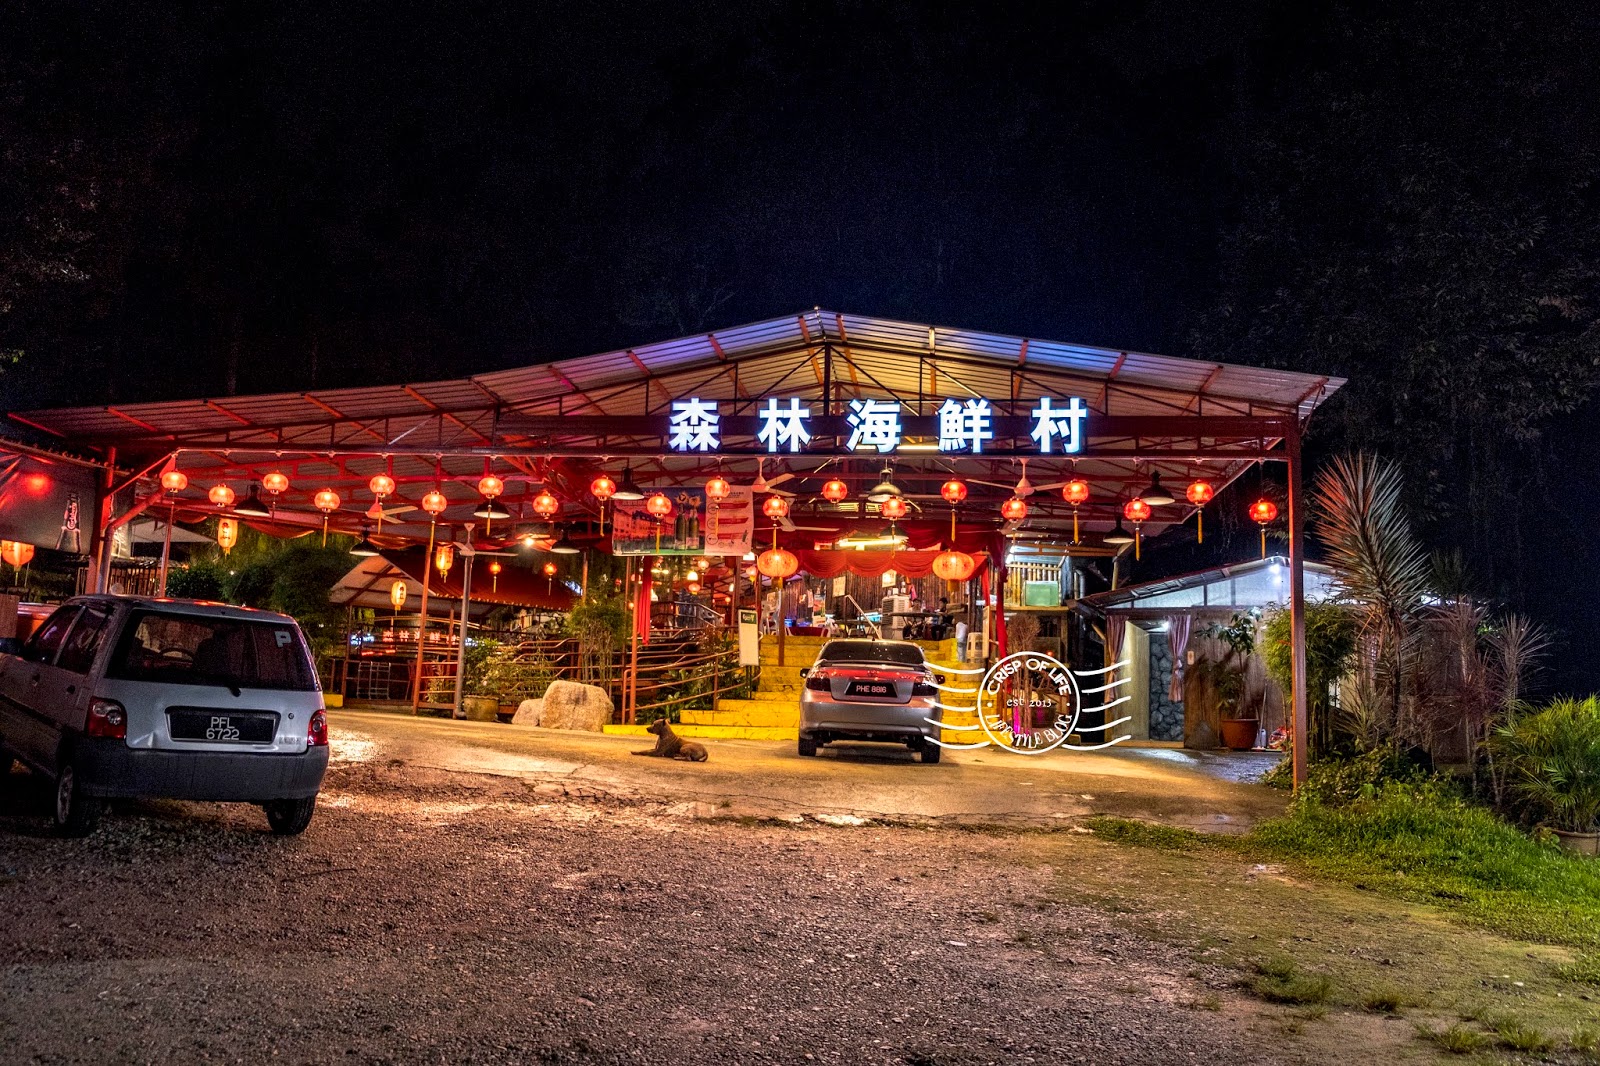 Kulim Forest Restaurant (森林海鲜村) at Kedah